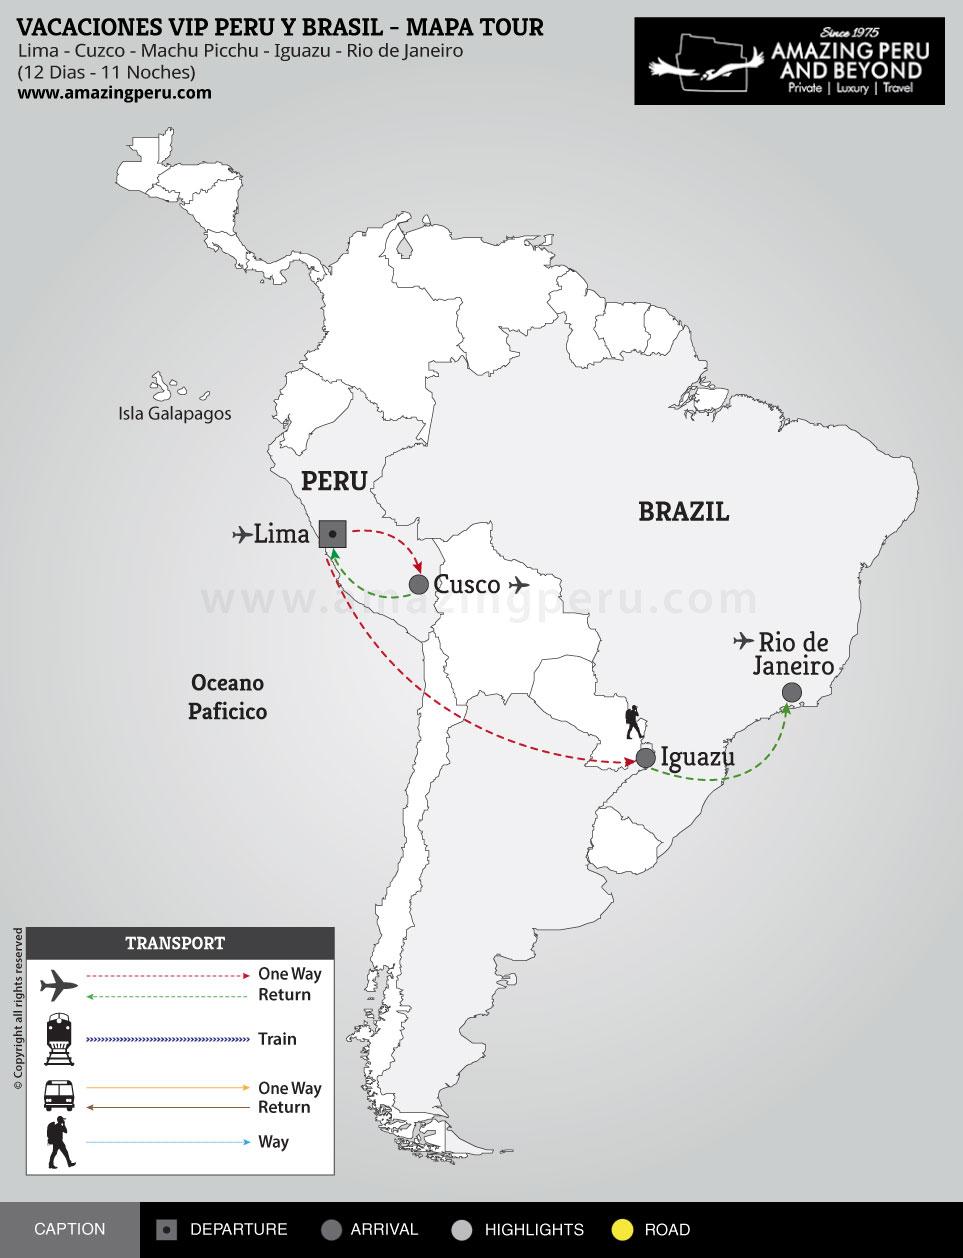 Viajes de Lujo Vip: Vacaciones Vip Peru y Brasil